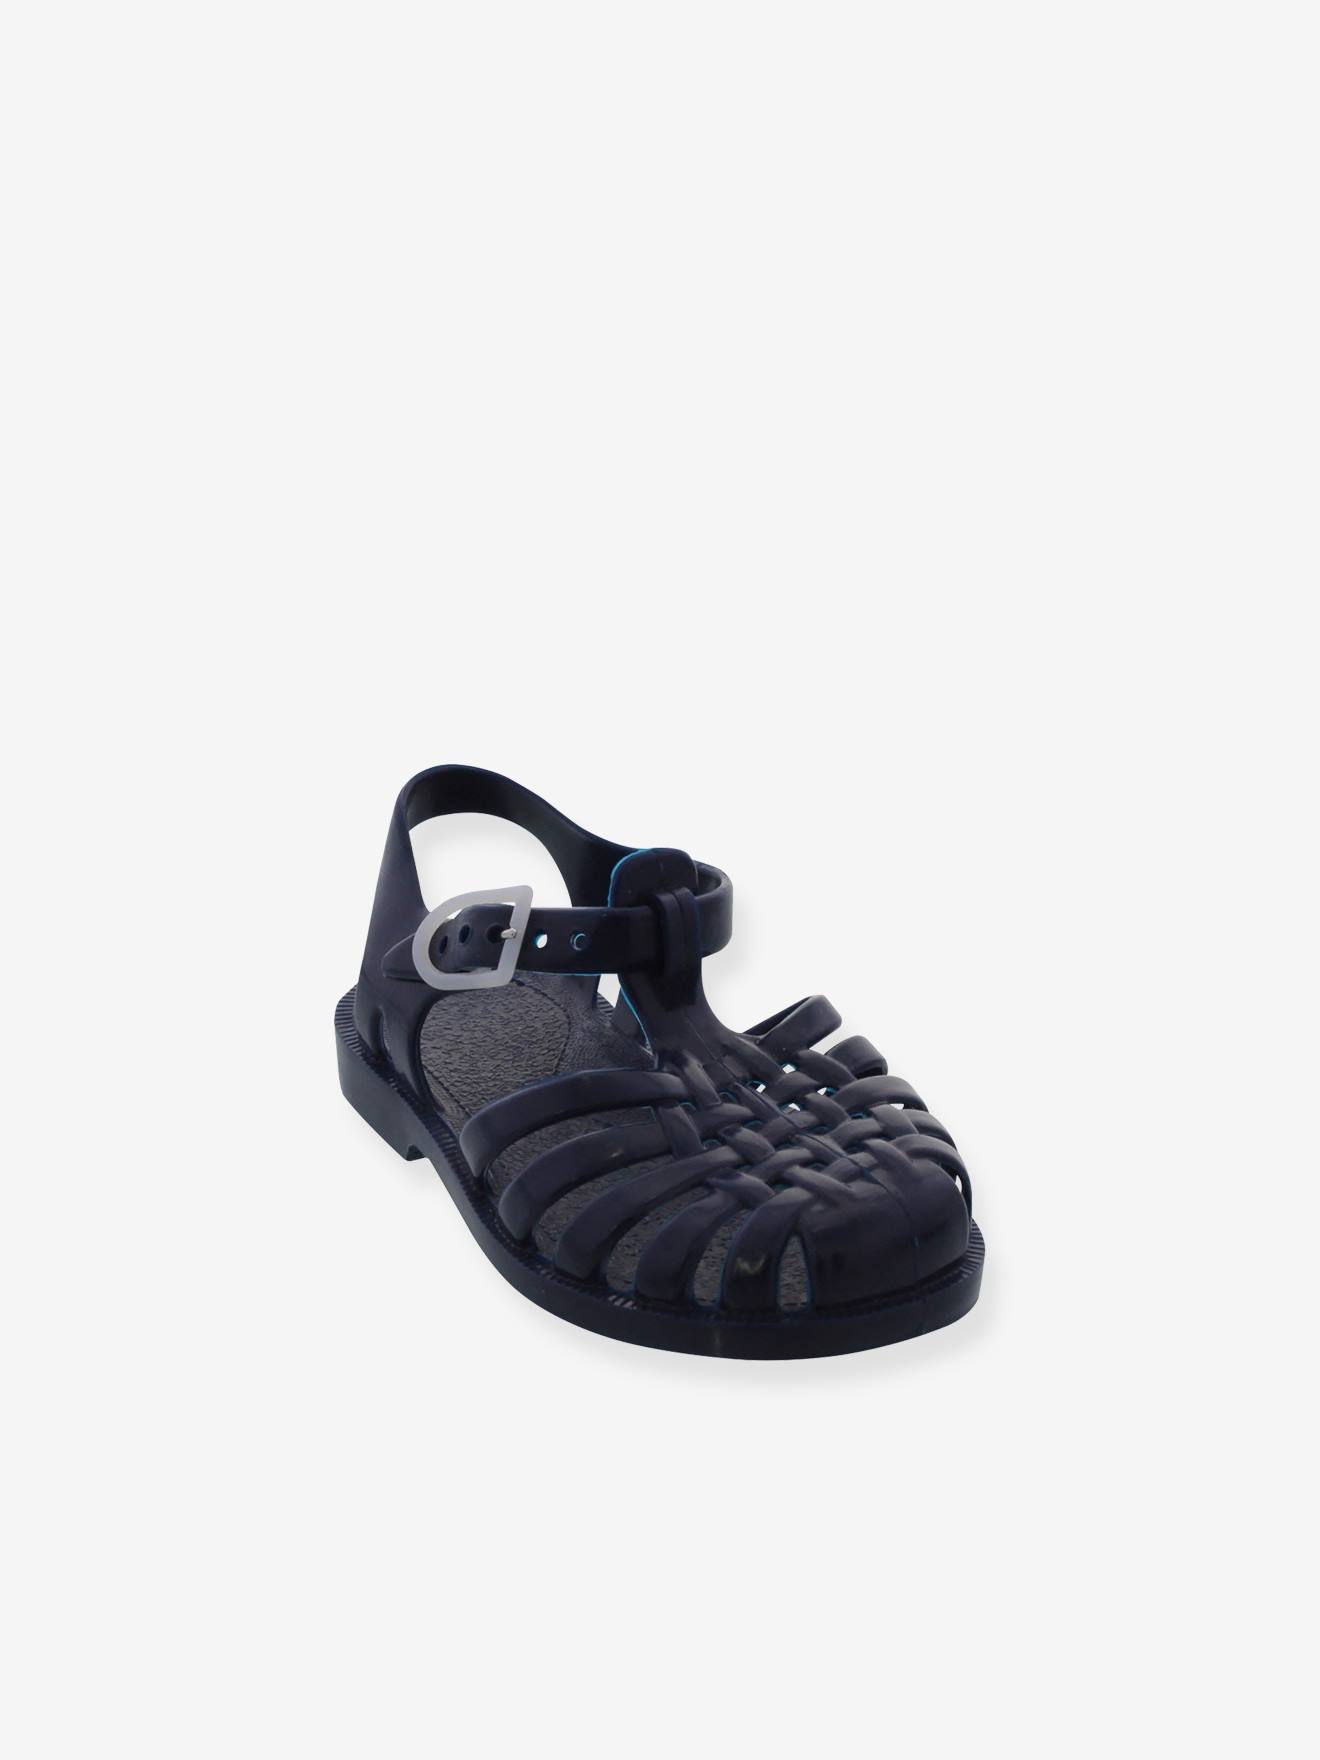 Sun Meduse(r) Sandals for Boys dark blue